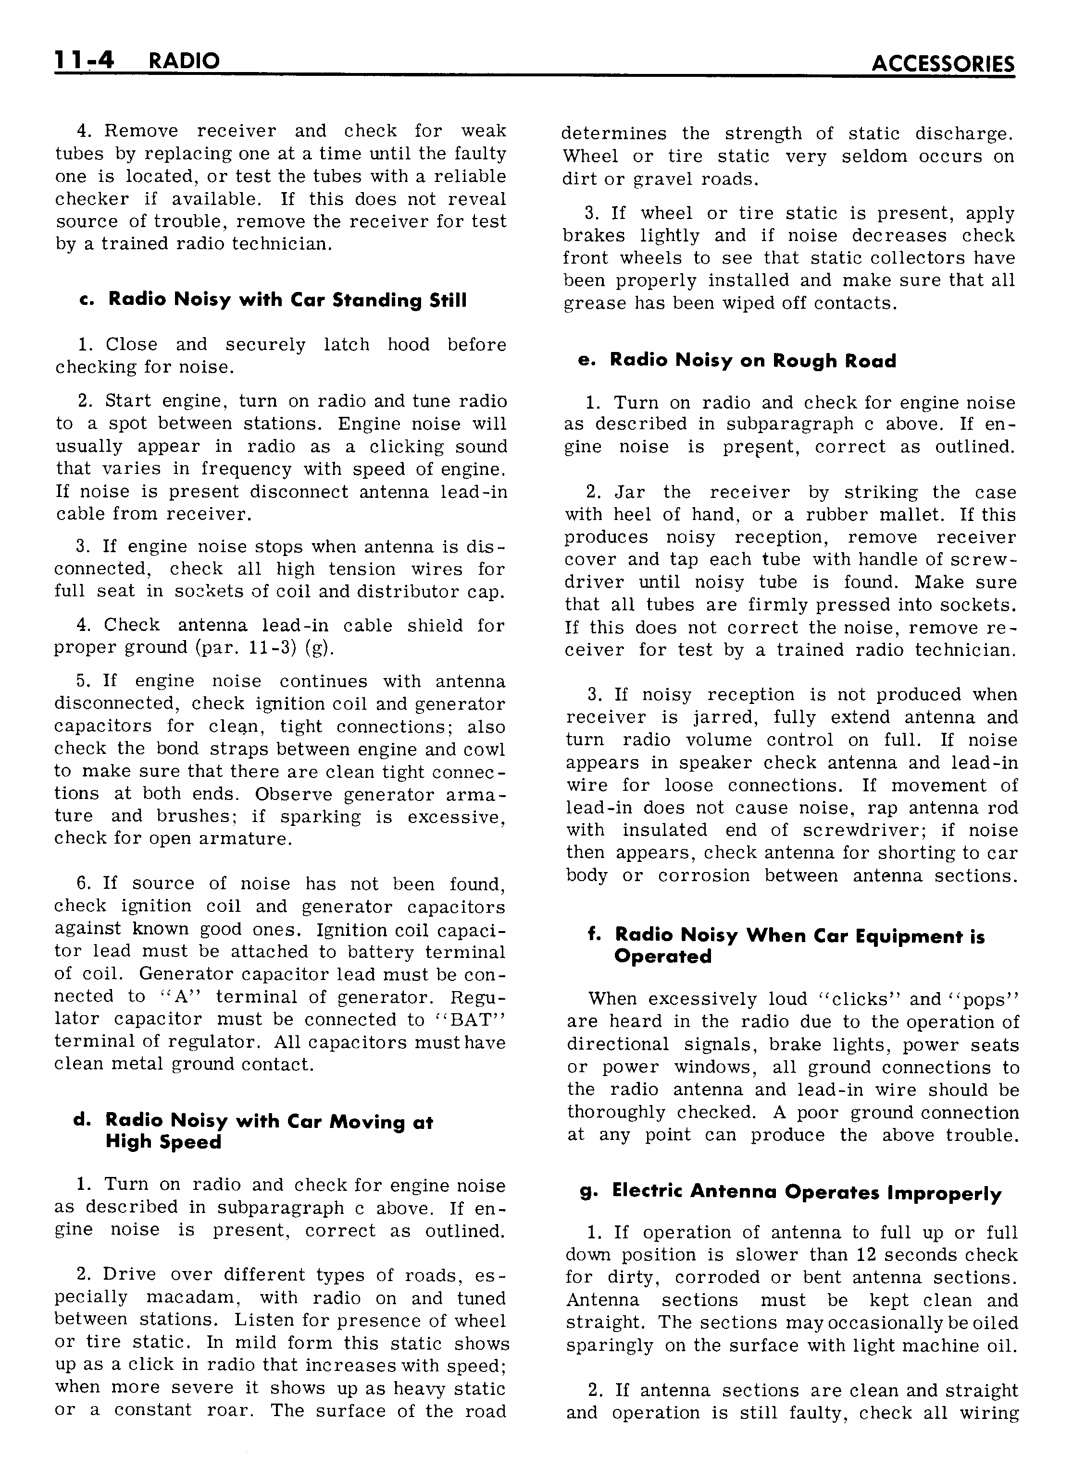 n_11 1961 Buick Shop Manual - Accessories-004-004.jpg